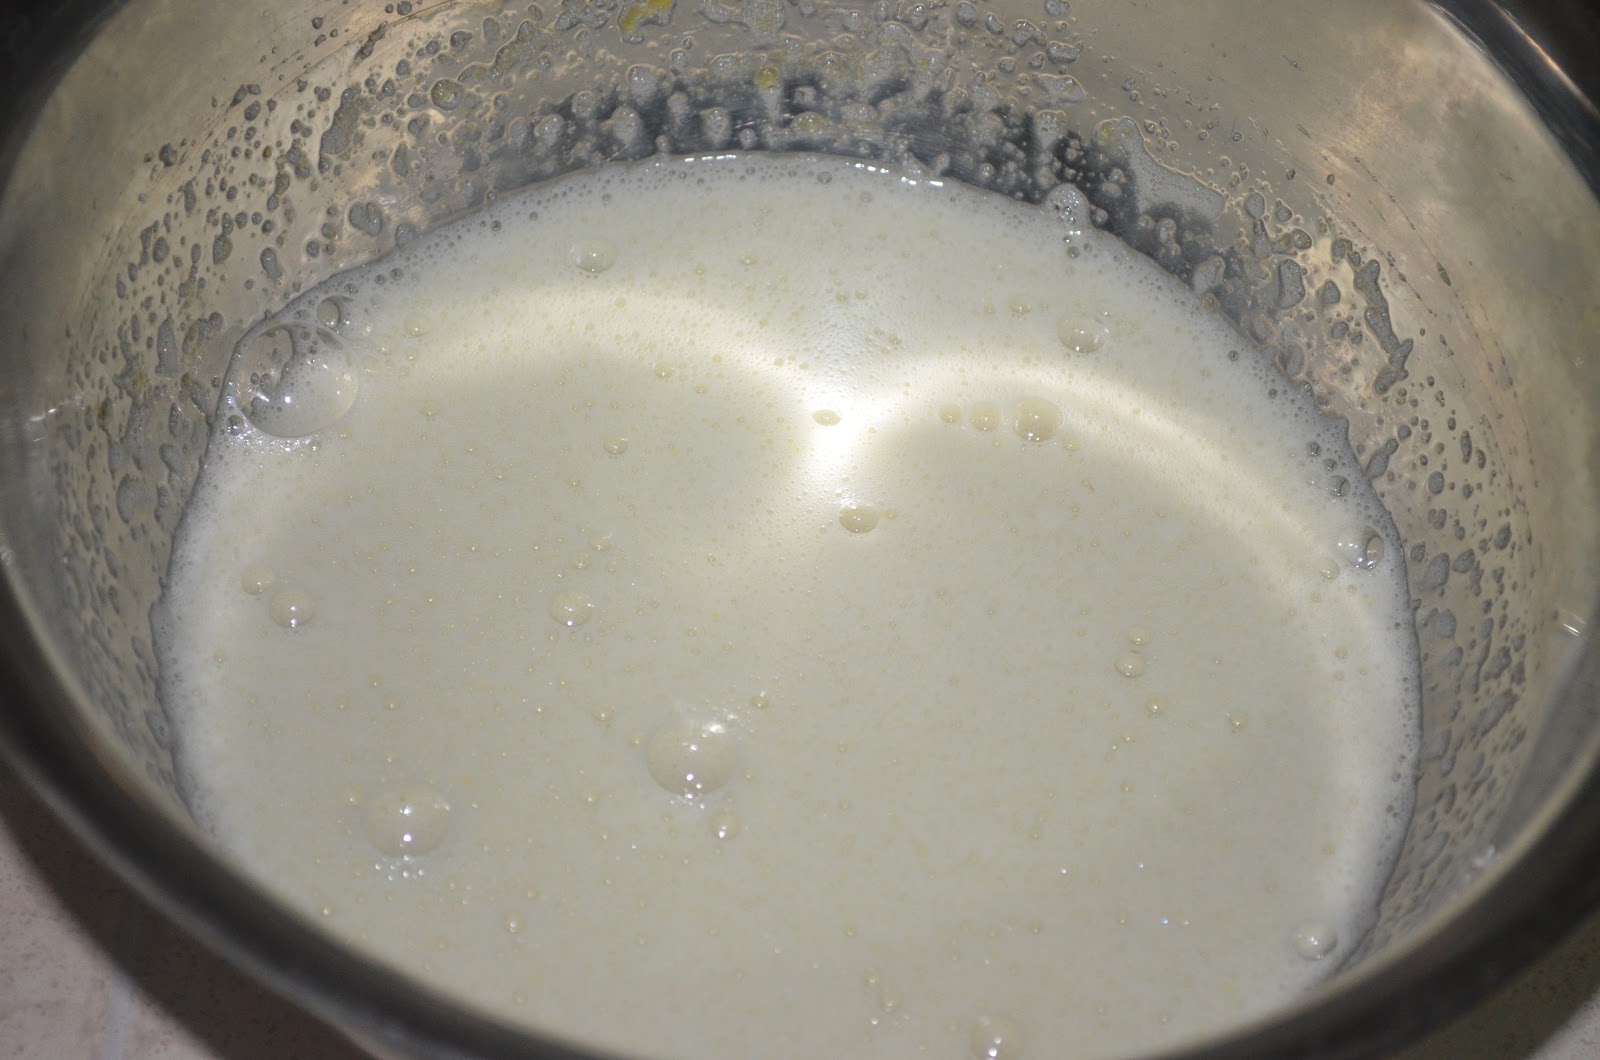 Сметана с сахаром на сковородке. 1 Яйцо 1 ст сахара молоко 1 стакан ванилин. Торт Наполеон из яиц, сметаны, сахара, масла, соды. Творожная запеканка перетереть масло с мукой щепотка соли и соды.